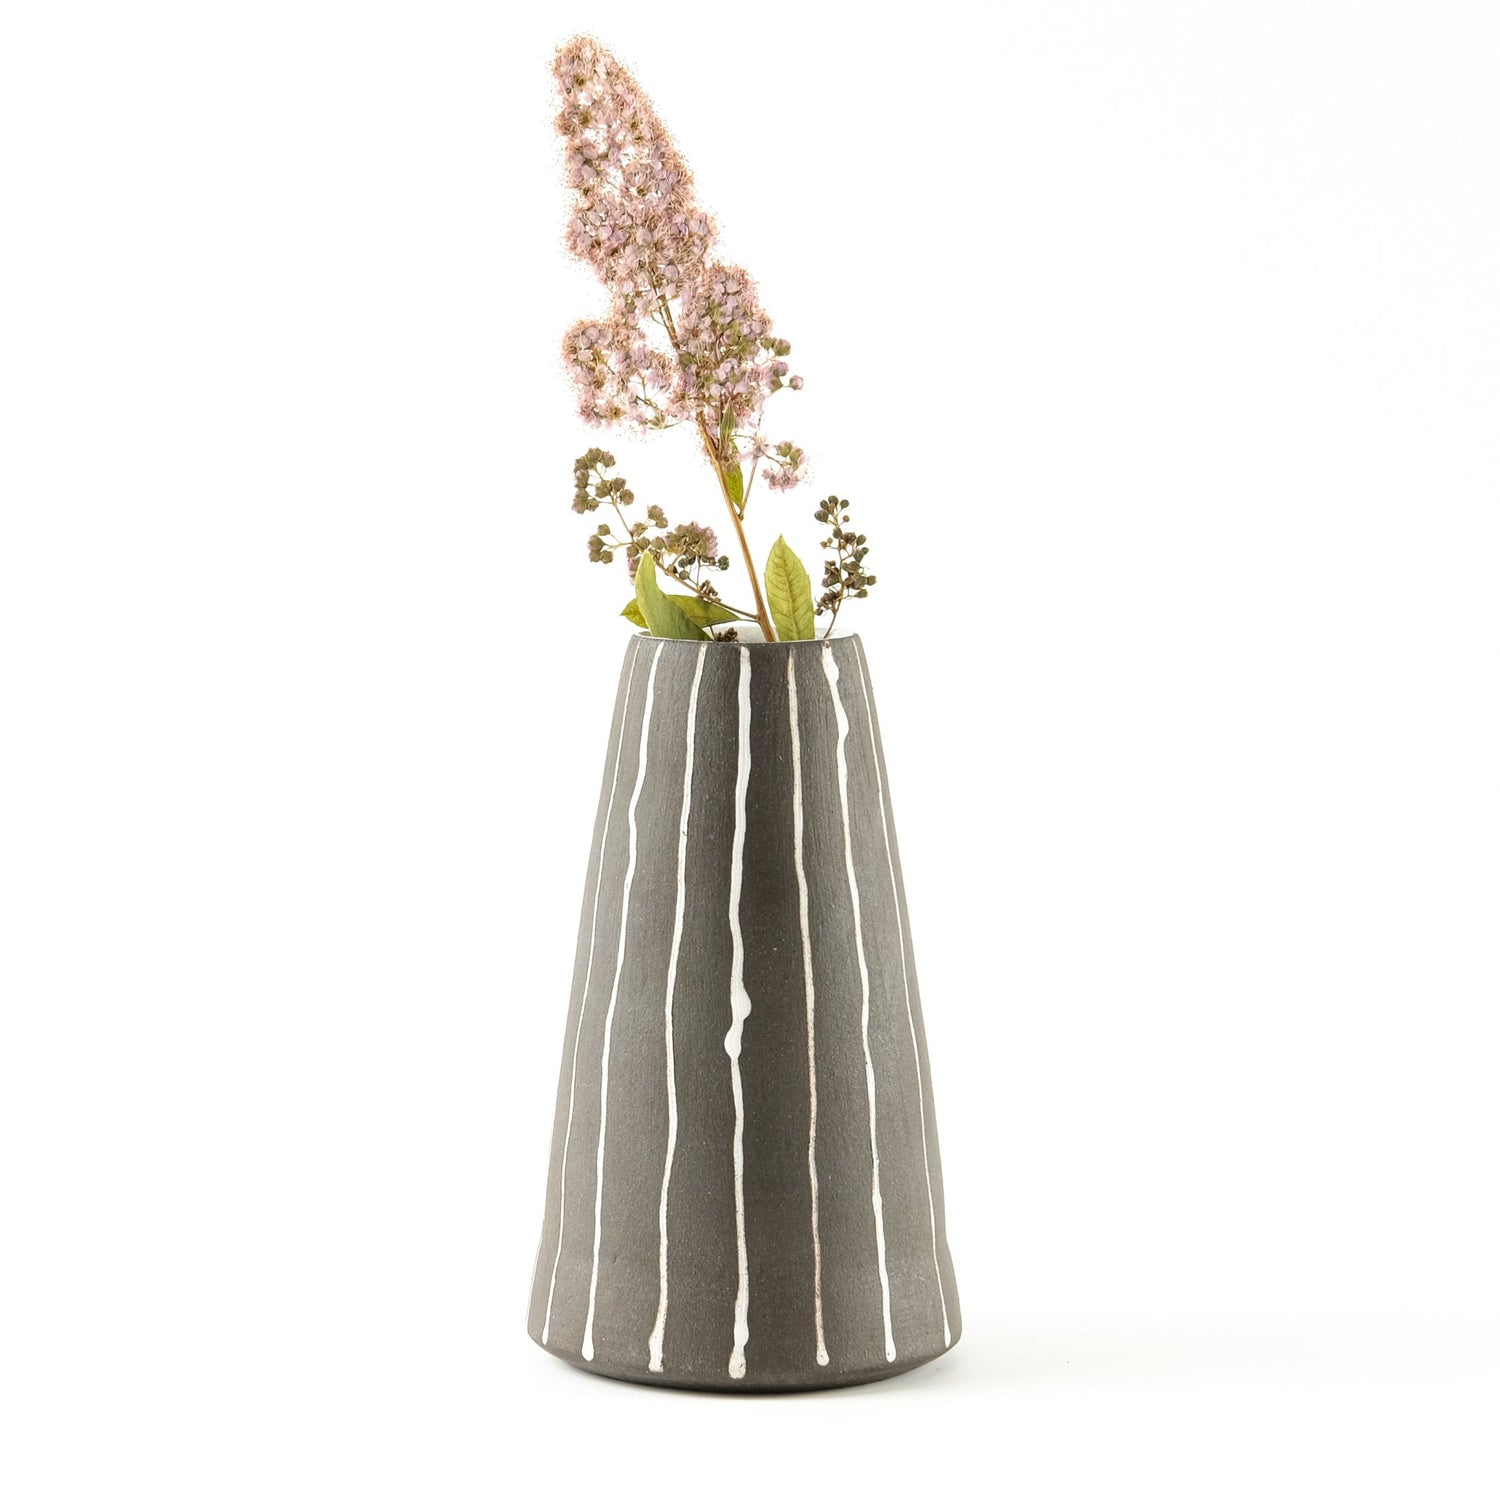 Floral & Plant - Adrea Davina Beres Ceramics